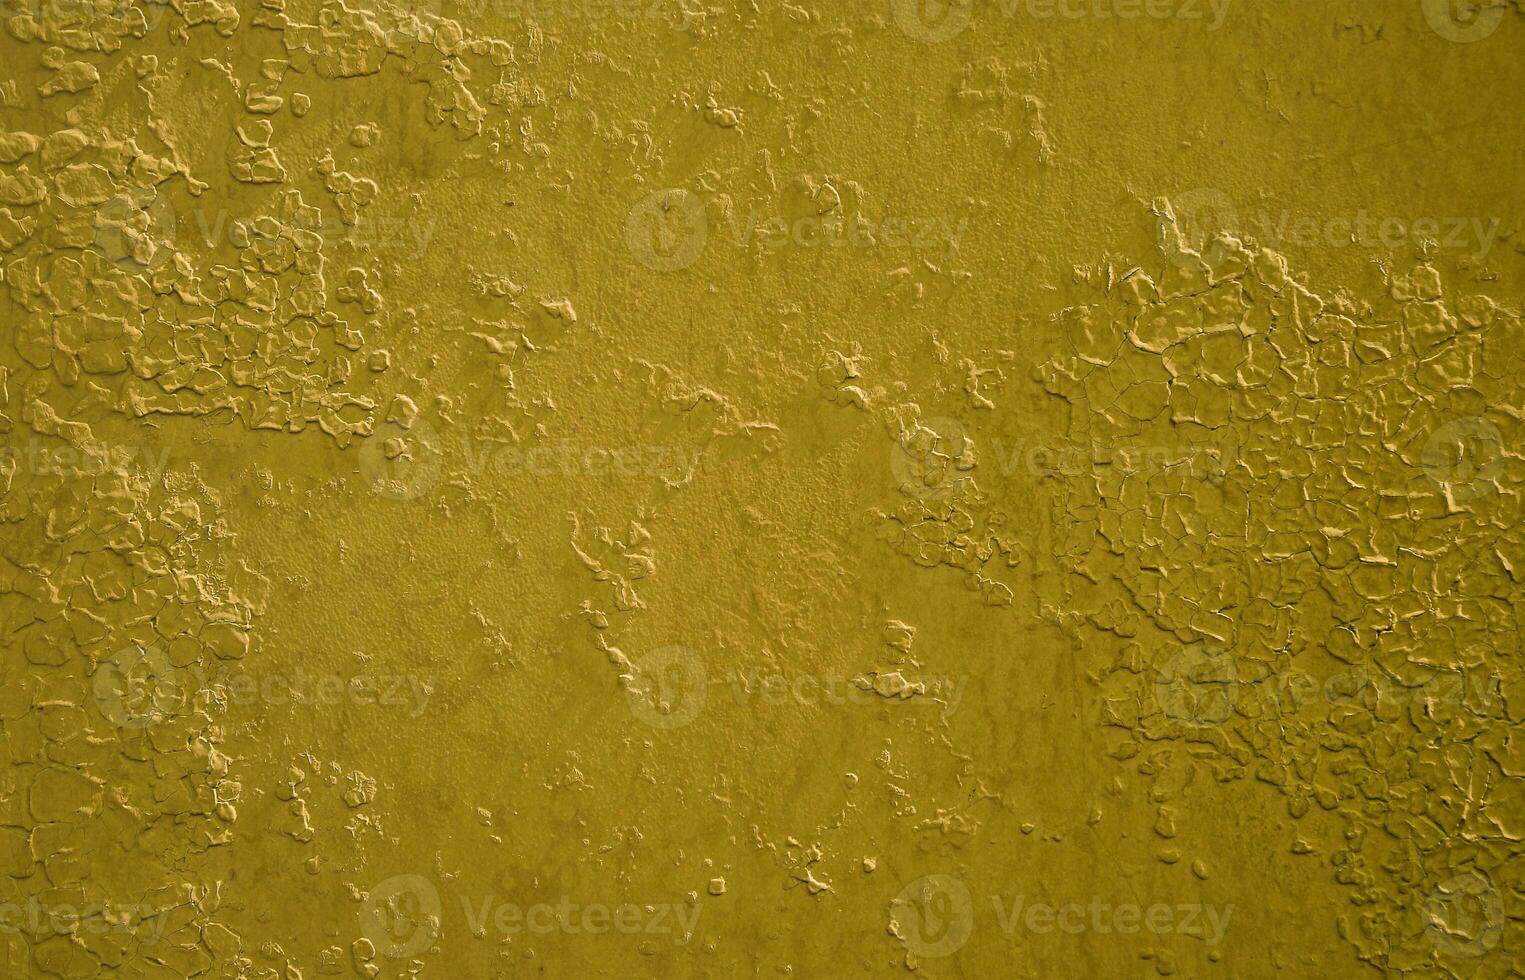 textur av en metall vägg med ett gammal måla beläggning den där byter under de inflytande av tid och väder foto